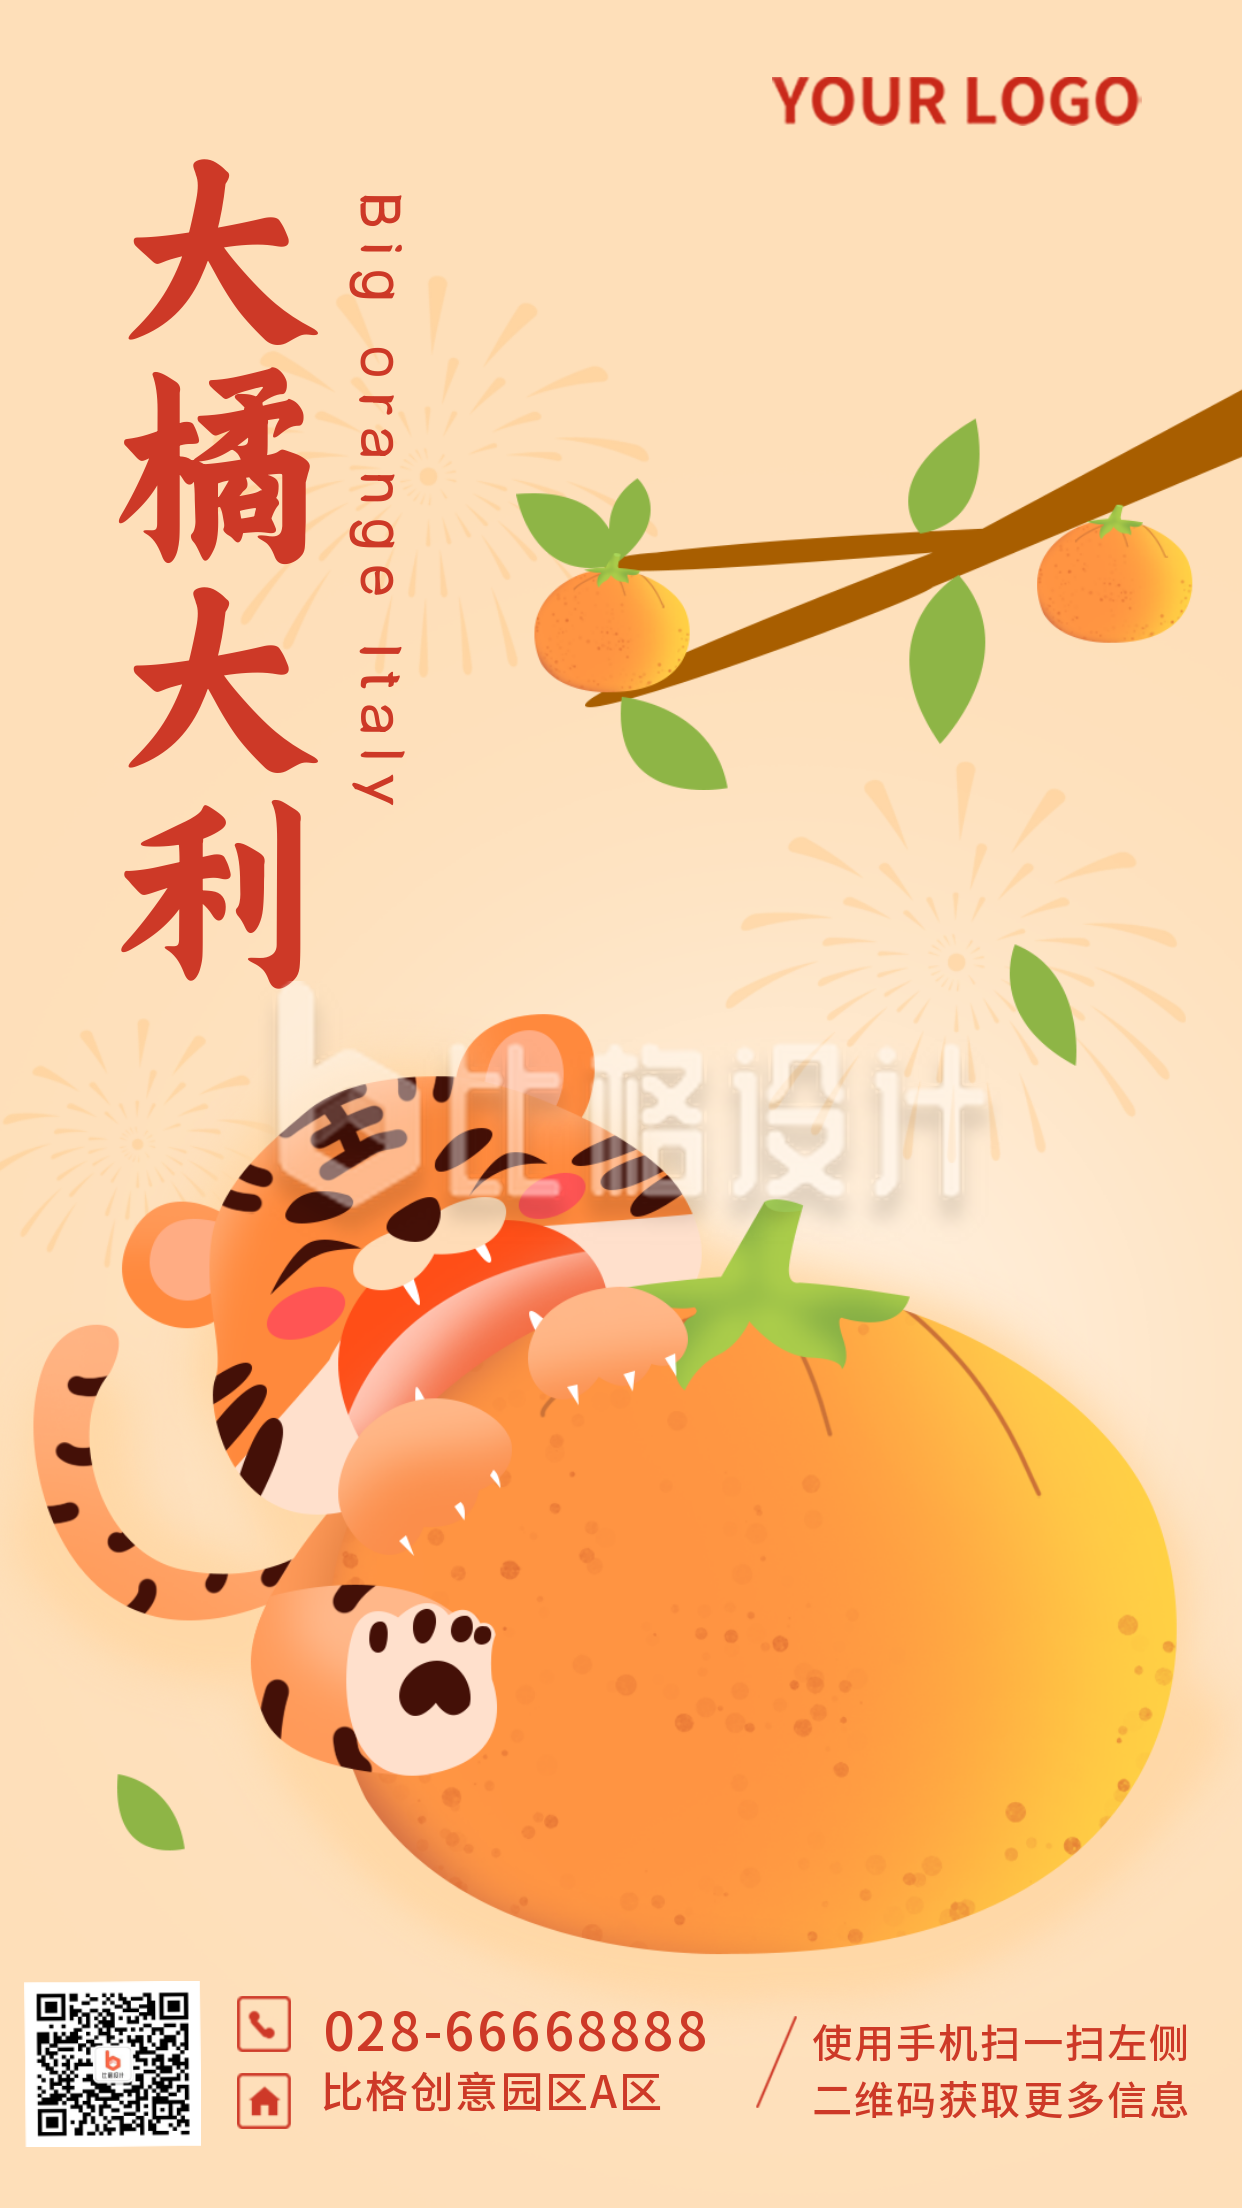 老虎过年网络热词趣味创意大橘大利祝福手机海报